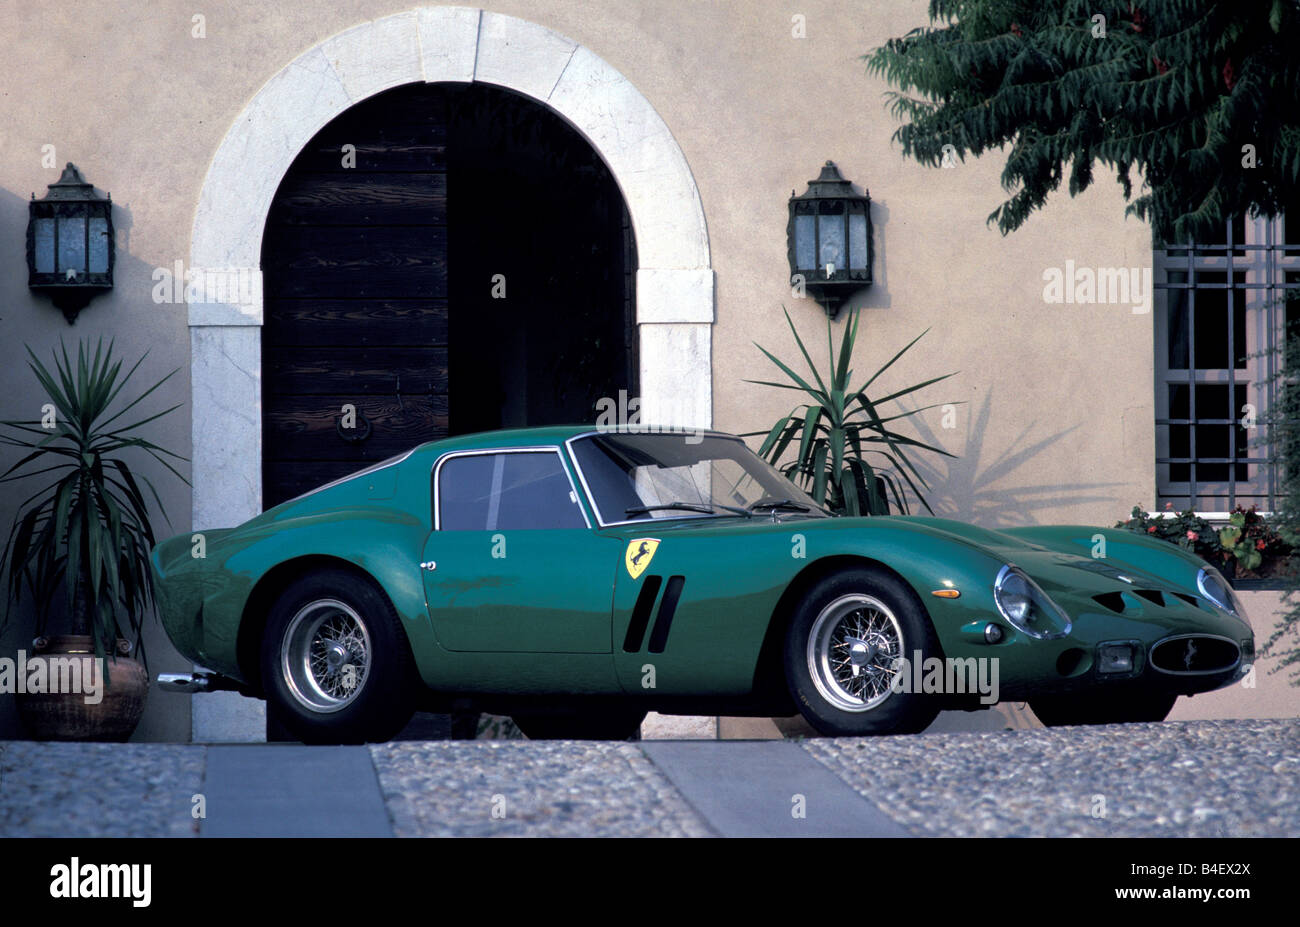 Voiture, Ferrari 250 GTO, l'année de modèle 1964, 1960, 1960, vintage car, voiture de sport, coupé, coupé, vert, debout, diagonal bof Banque D'Images